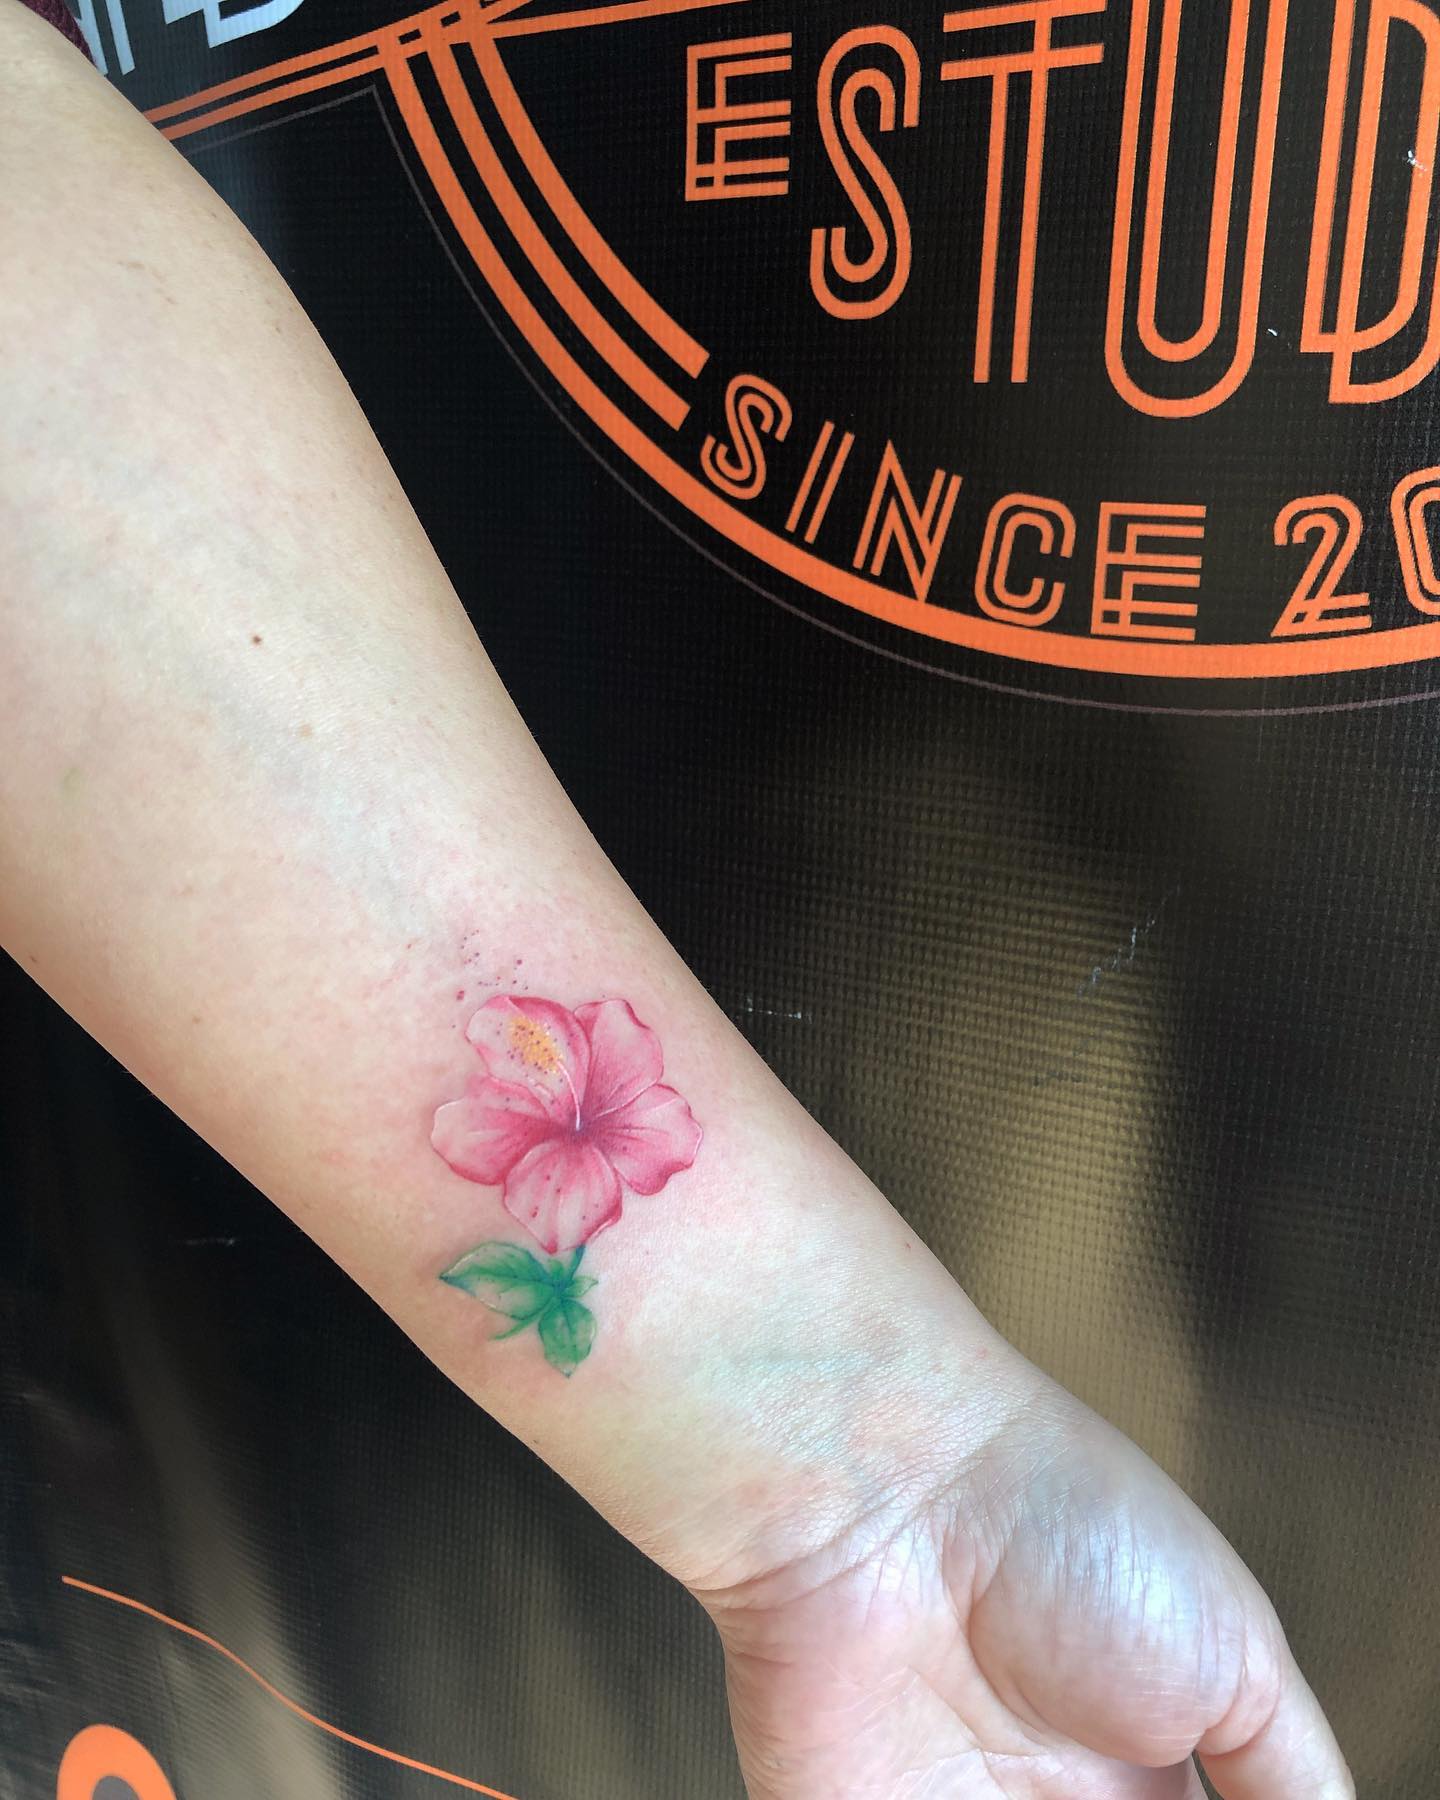 Hawajski tatuaż z małym kwiatkiem na nadgarstku